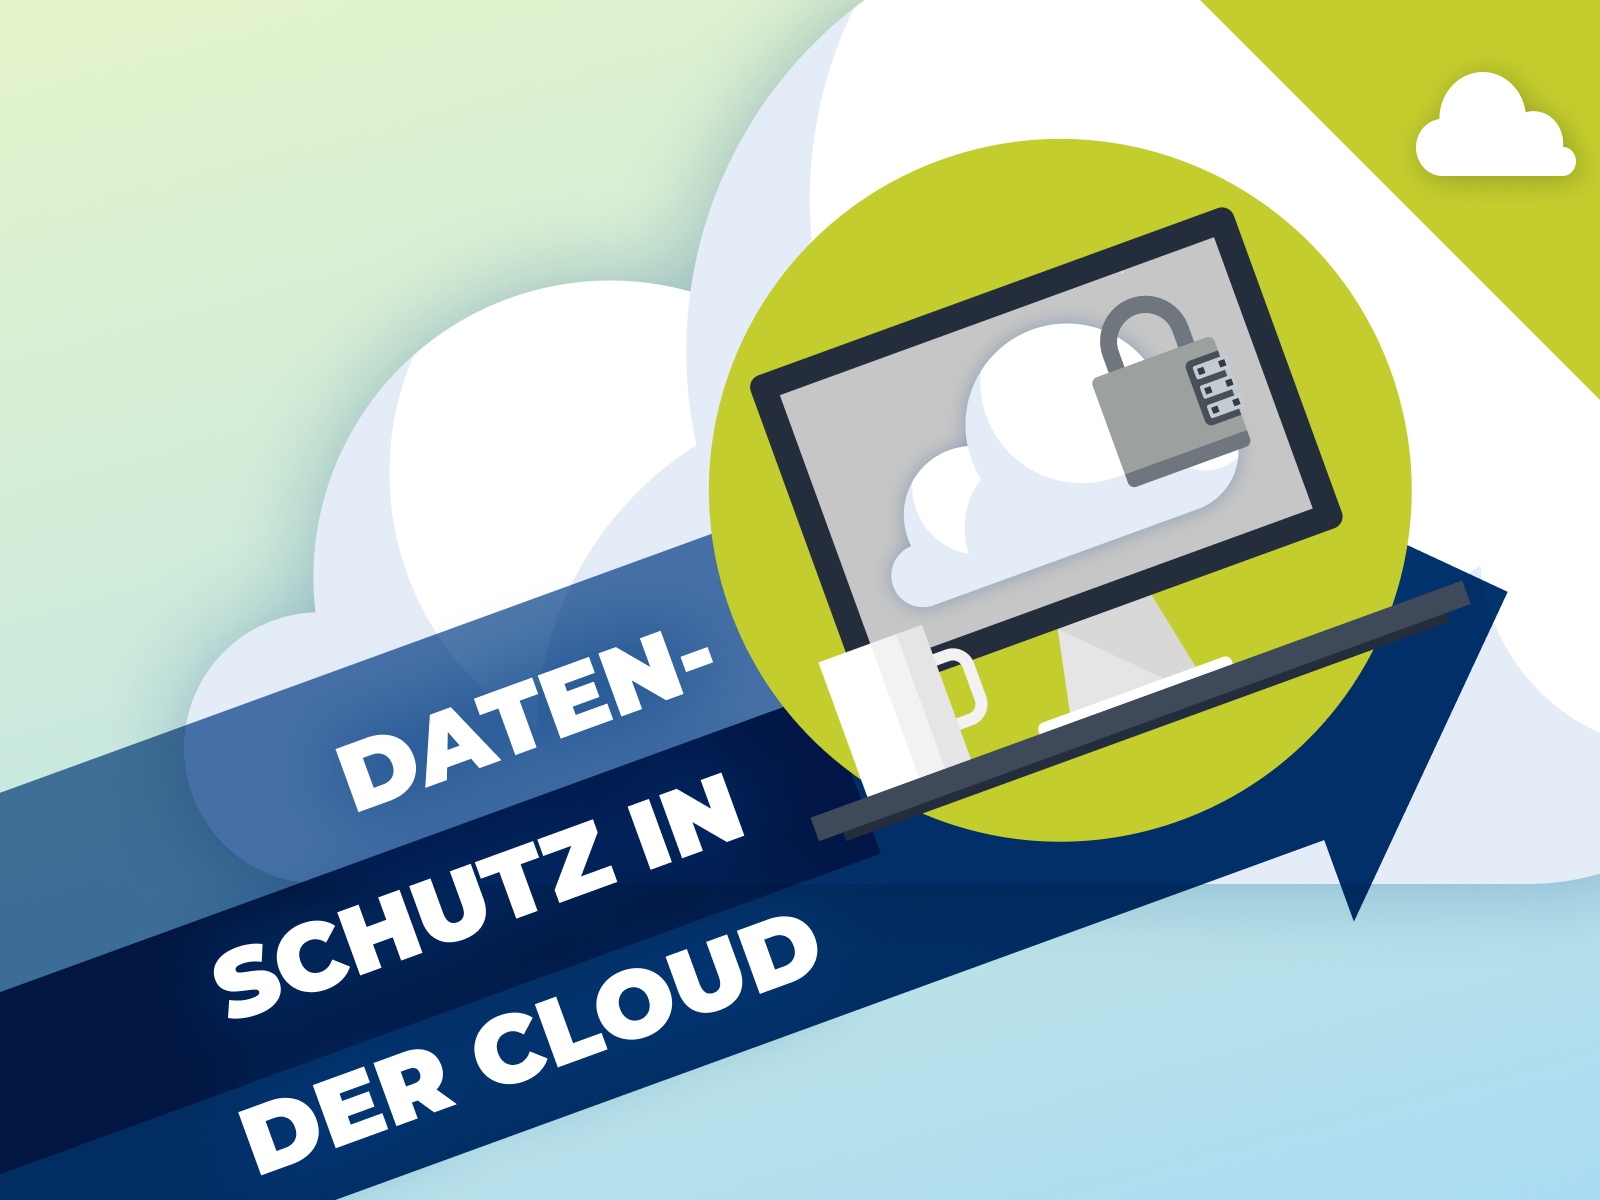 Datenschutz und die Atlassian Cloud – exklusives Datenschutz-Assessment sichern!